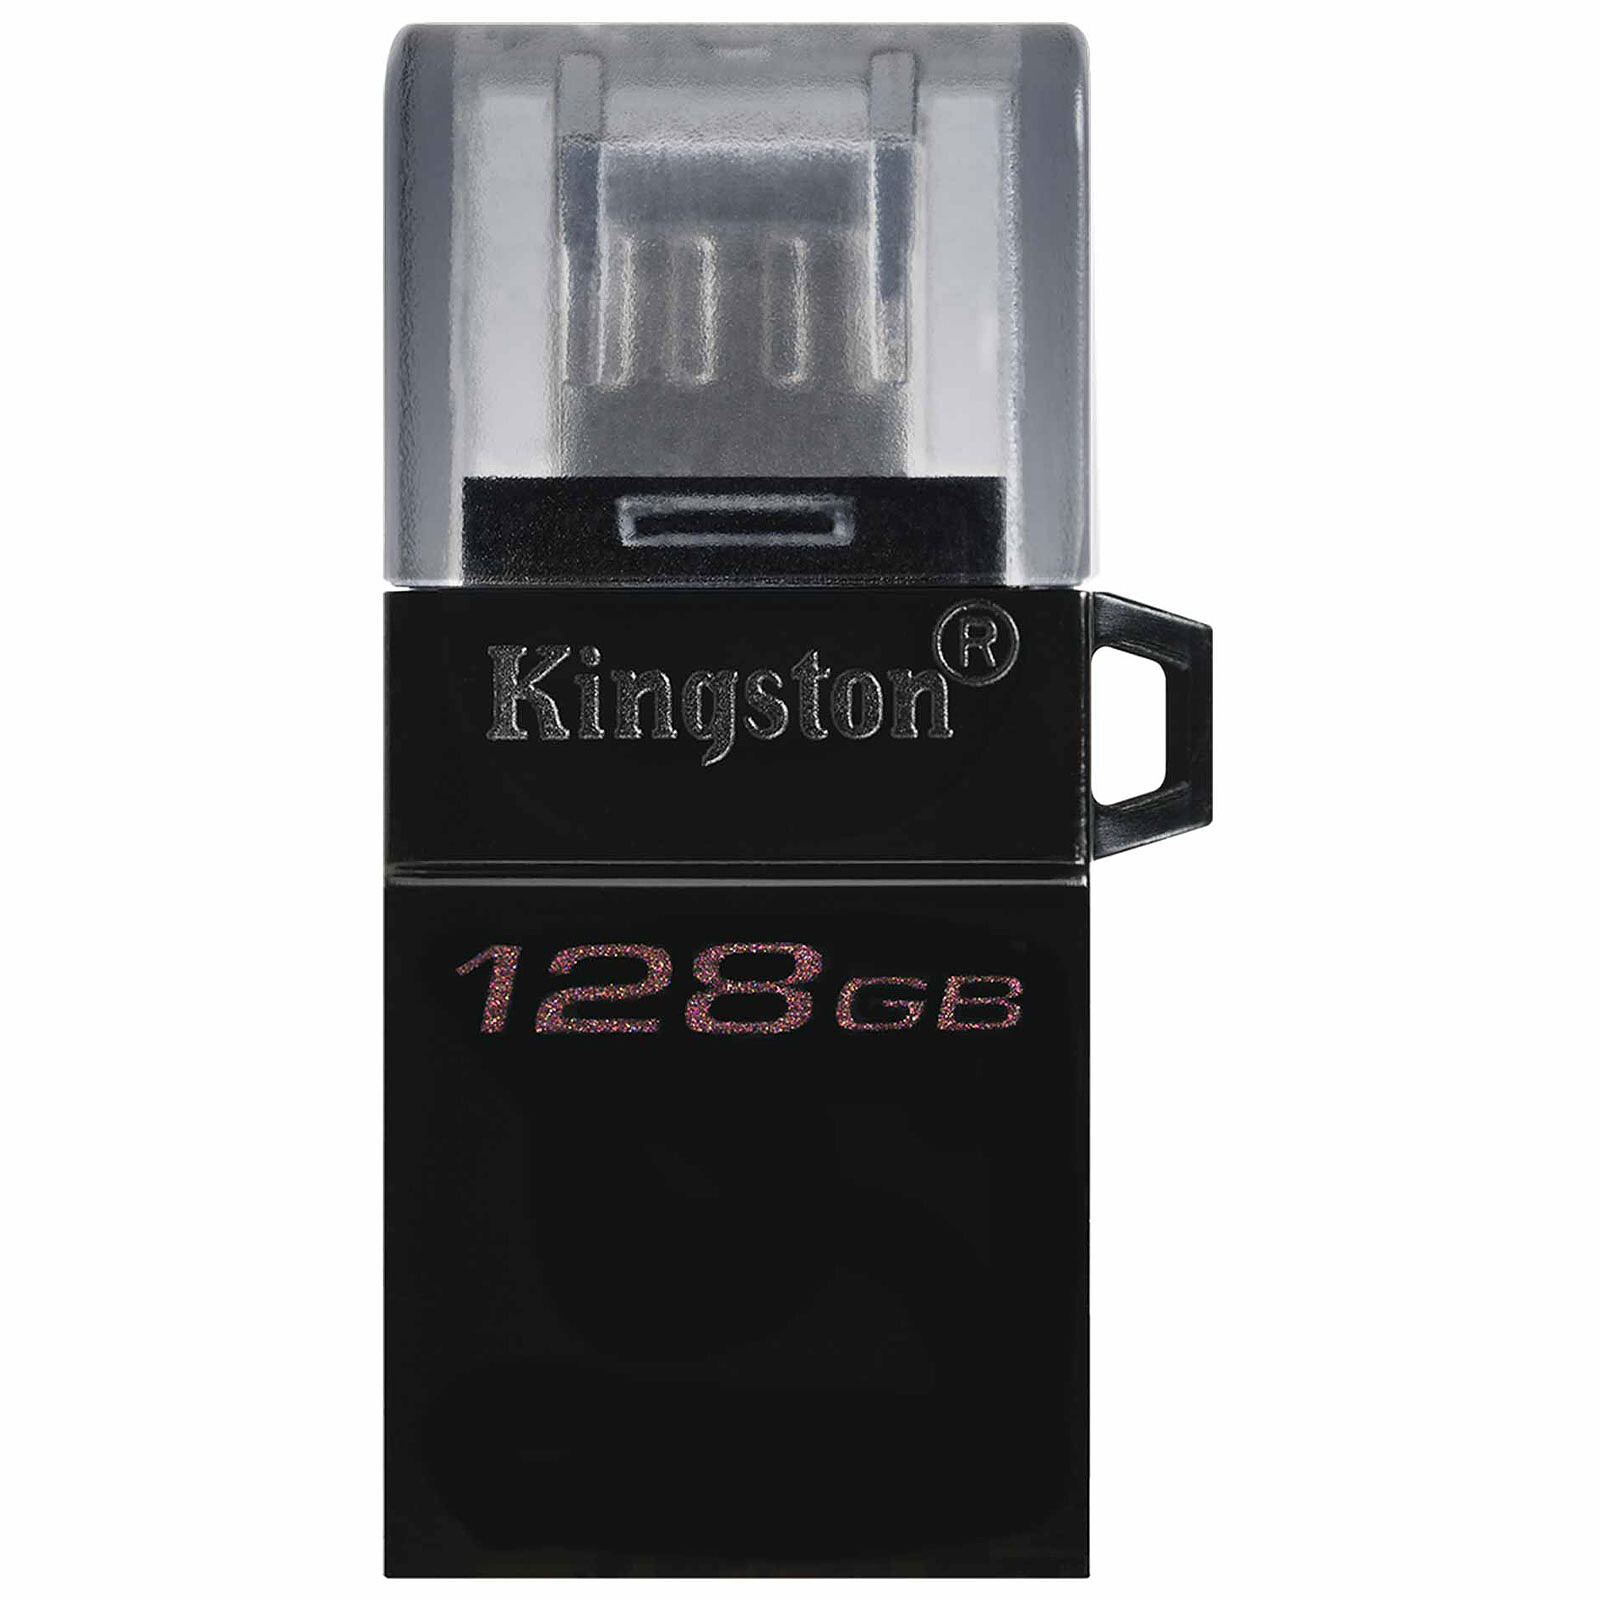 SanDisk Ultra Luxe USB-C 128 Go - Clé USB - LDLC